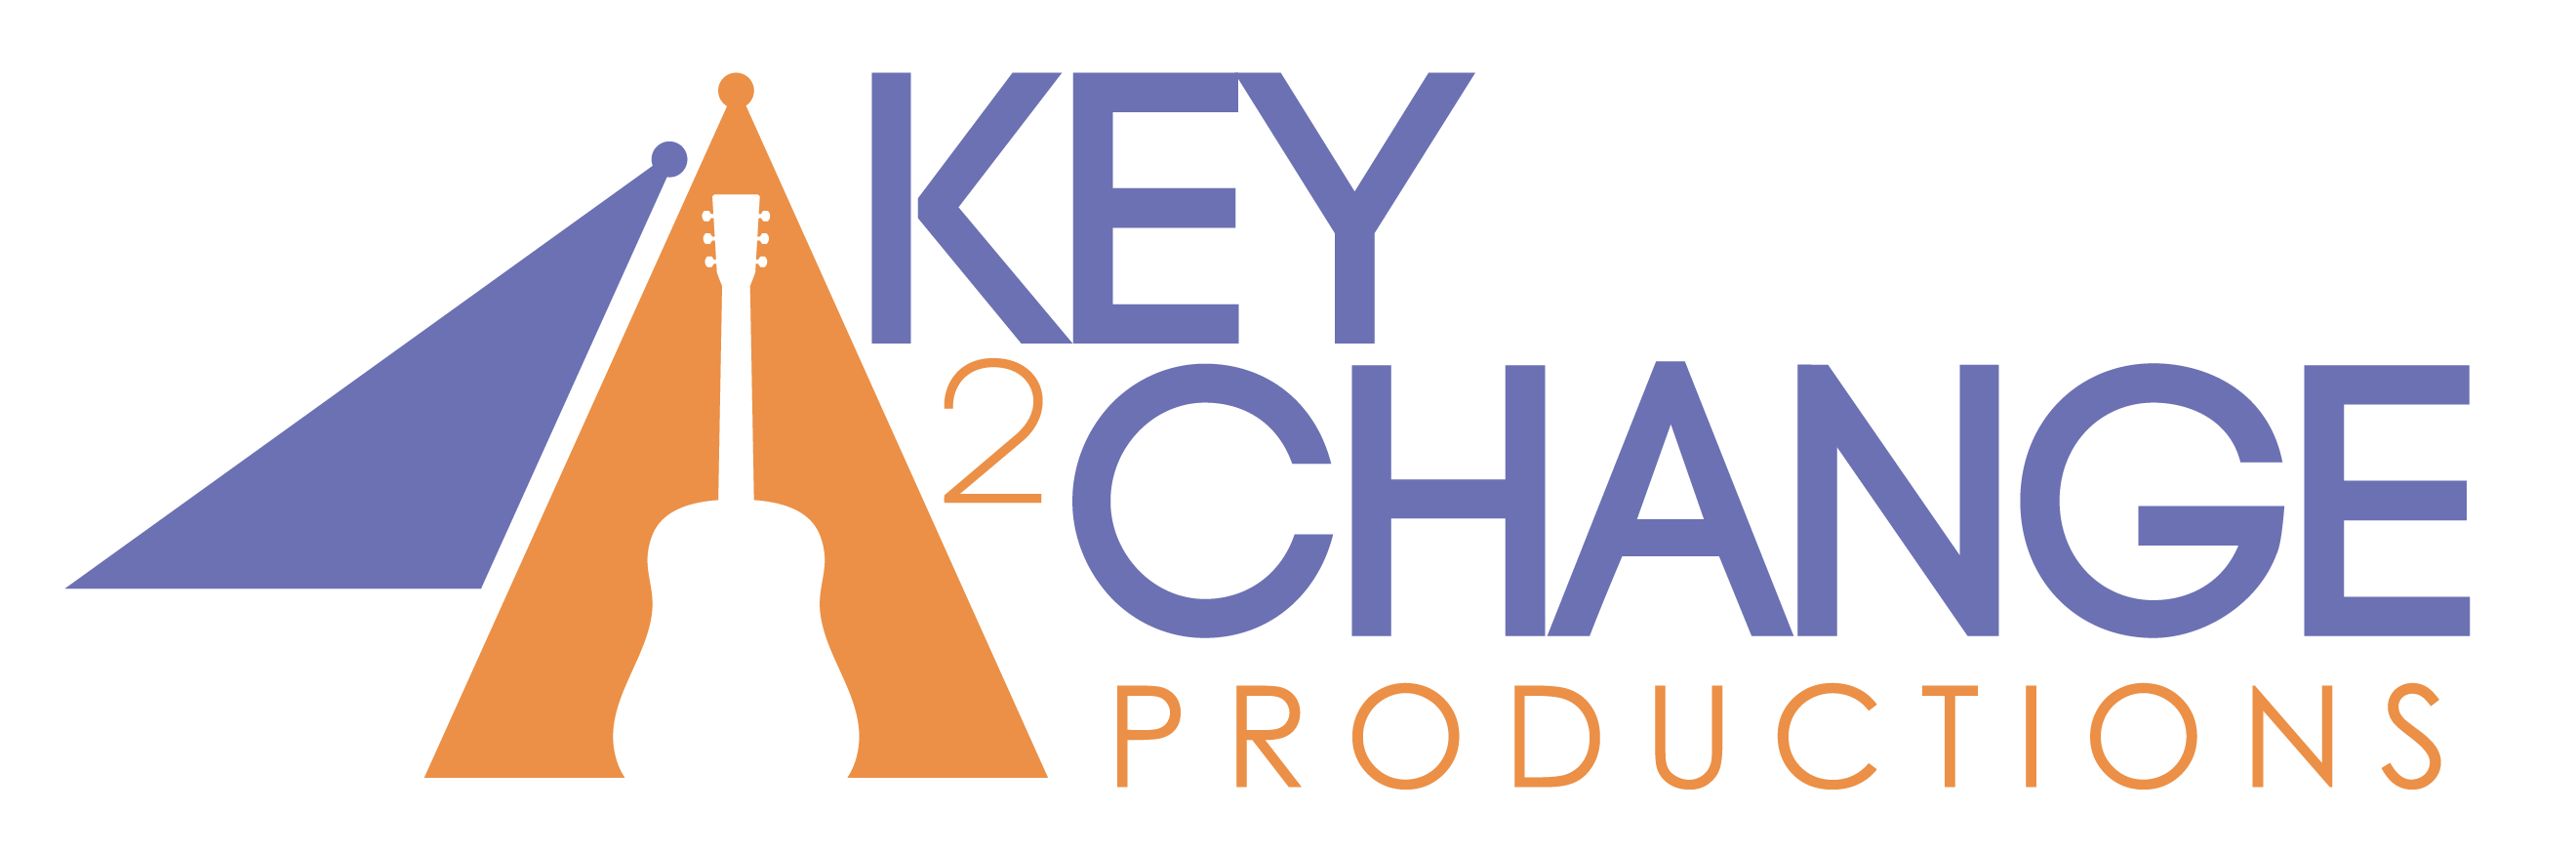 Key2Change